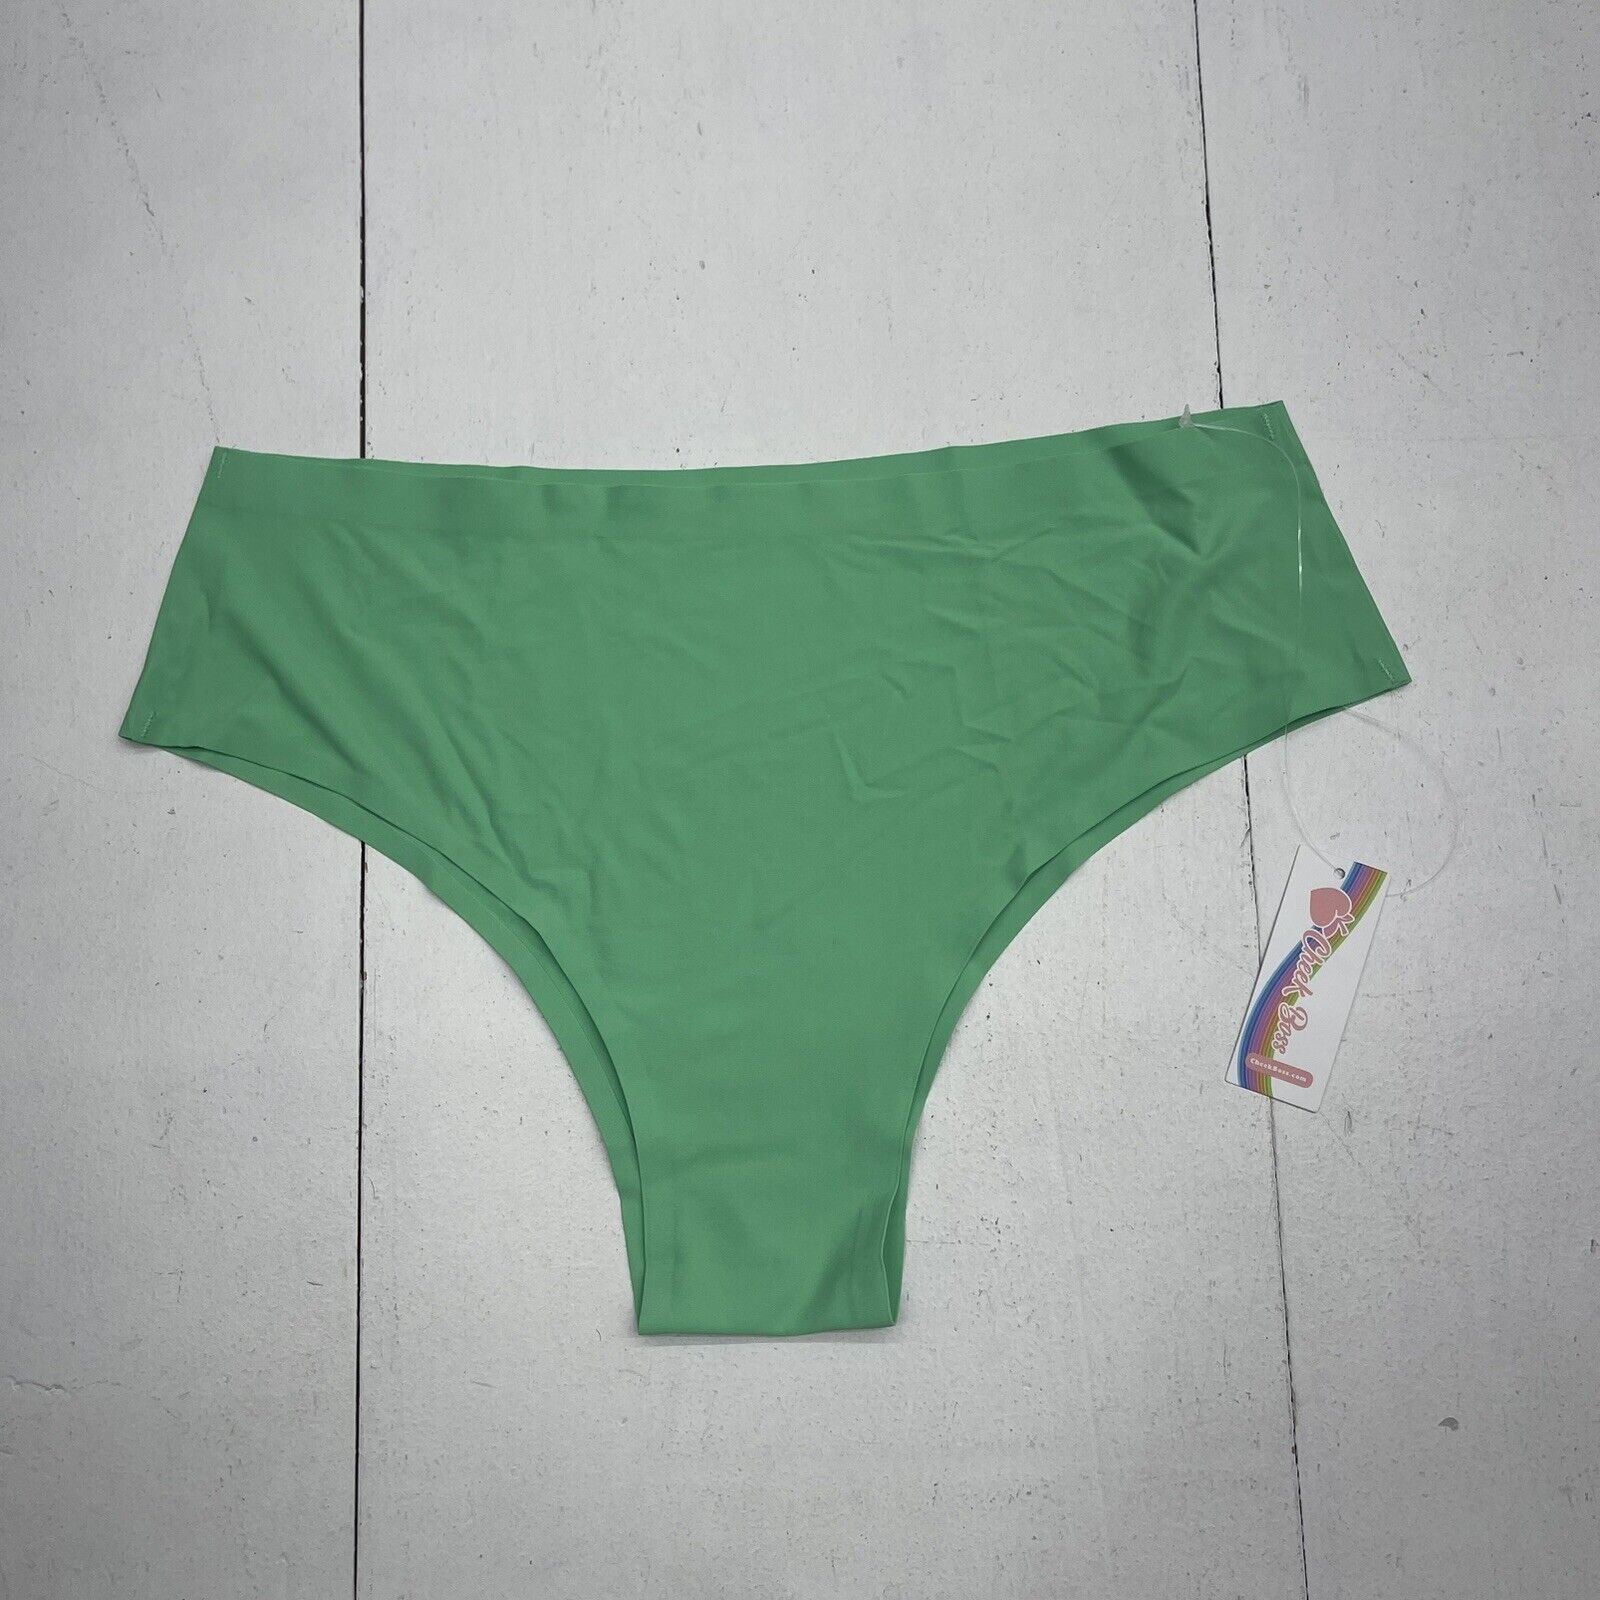 Cheek Boss Green Cheeky Underwear Women’s XL New